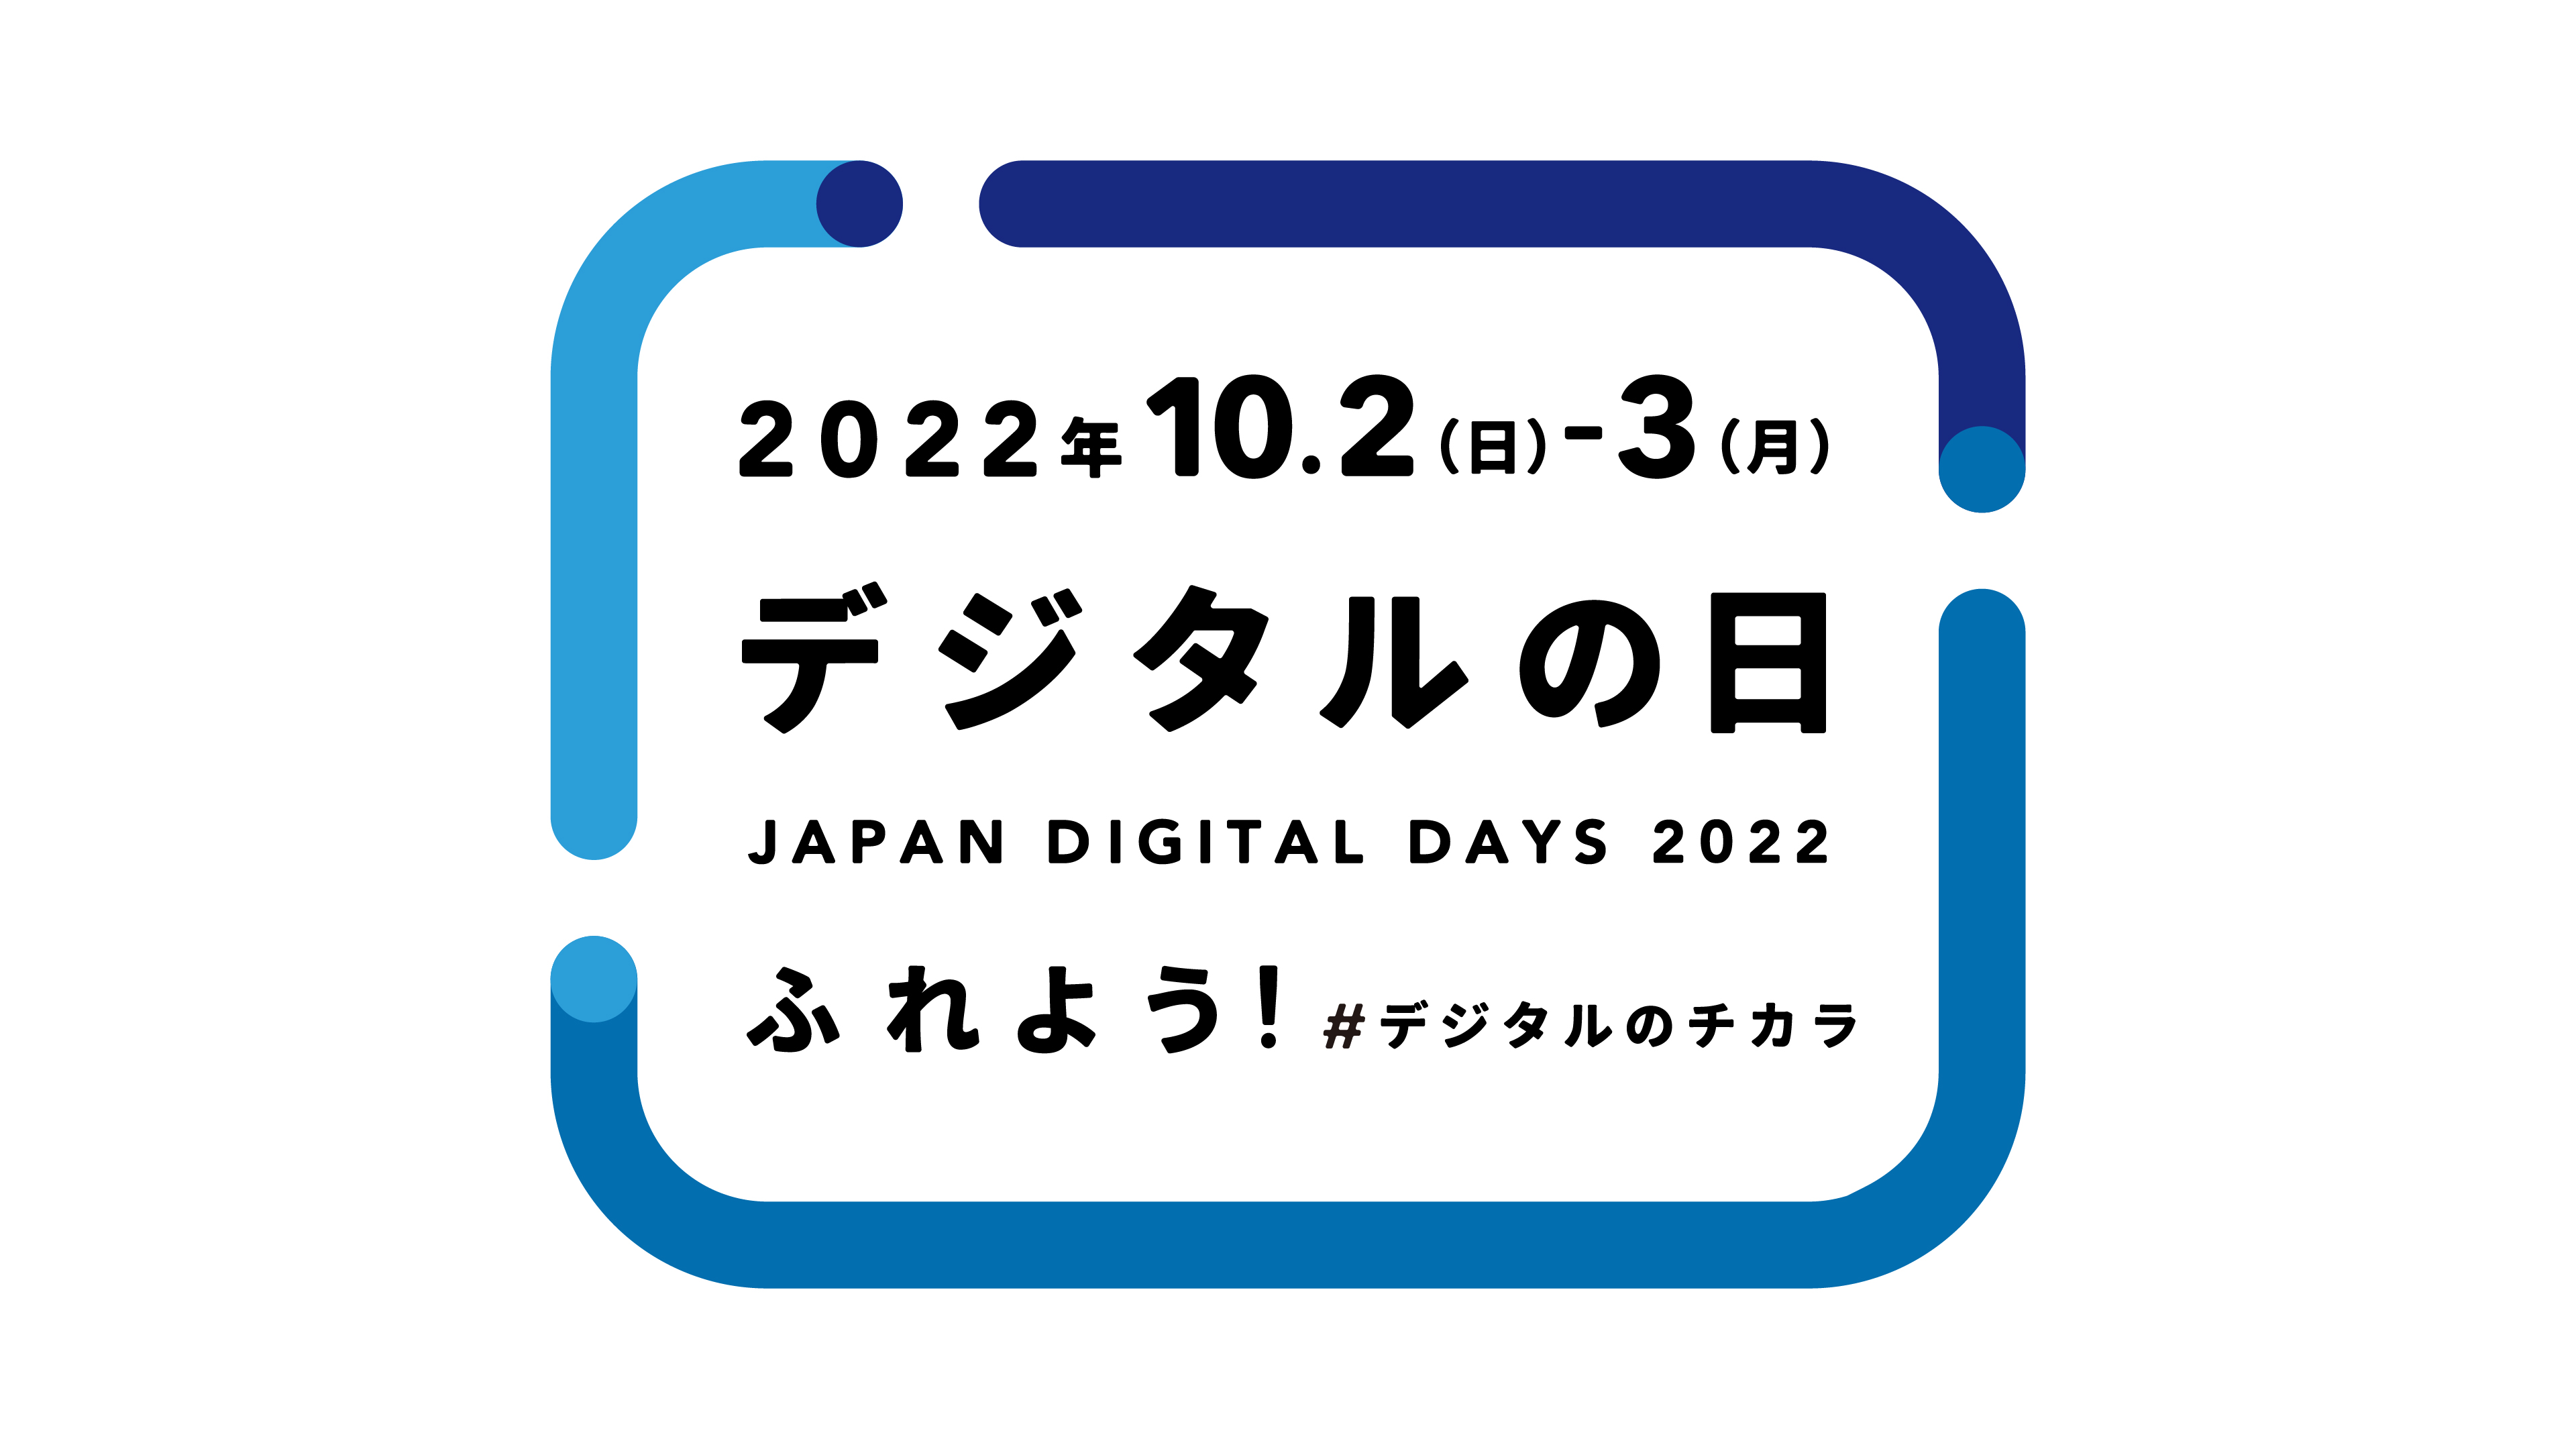 2022年デジタルの日 ロゴ画像。ロゴの中心部に、「2022年10月2日（日）から3日（月）デジタルの日 JAPAN DIGITAL DAYS 2022 ふれよう！#デジタルのチカラ」と書かれている。